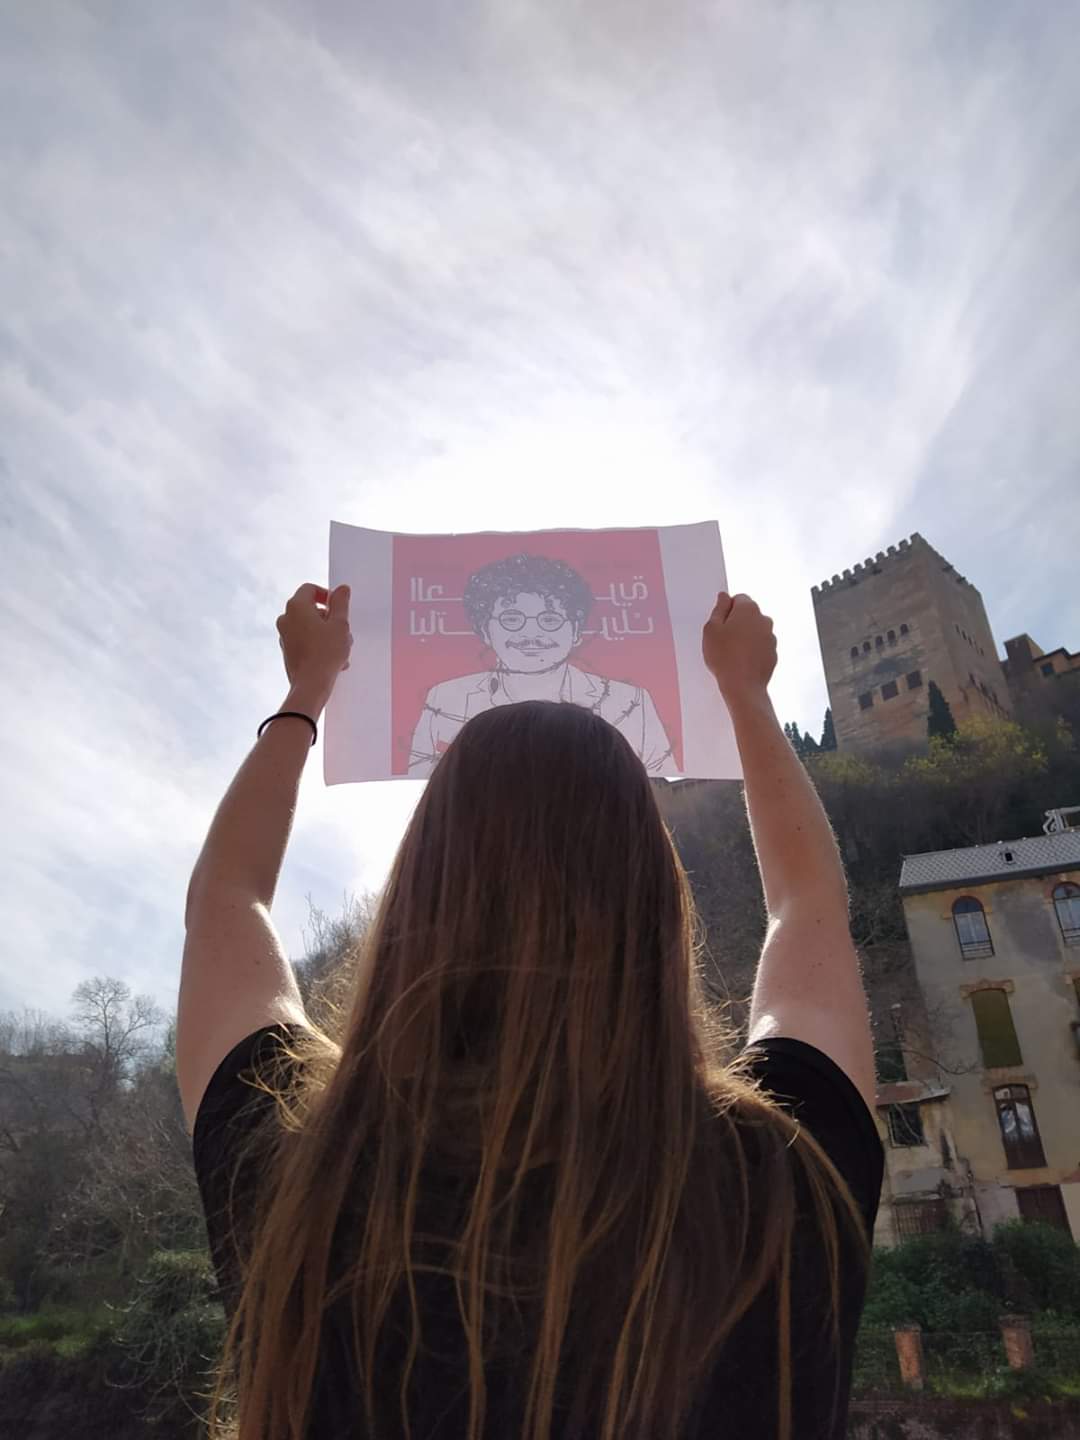 Una estudiante del GEMMA sostiene un cartel de Free Patrick